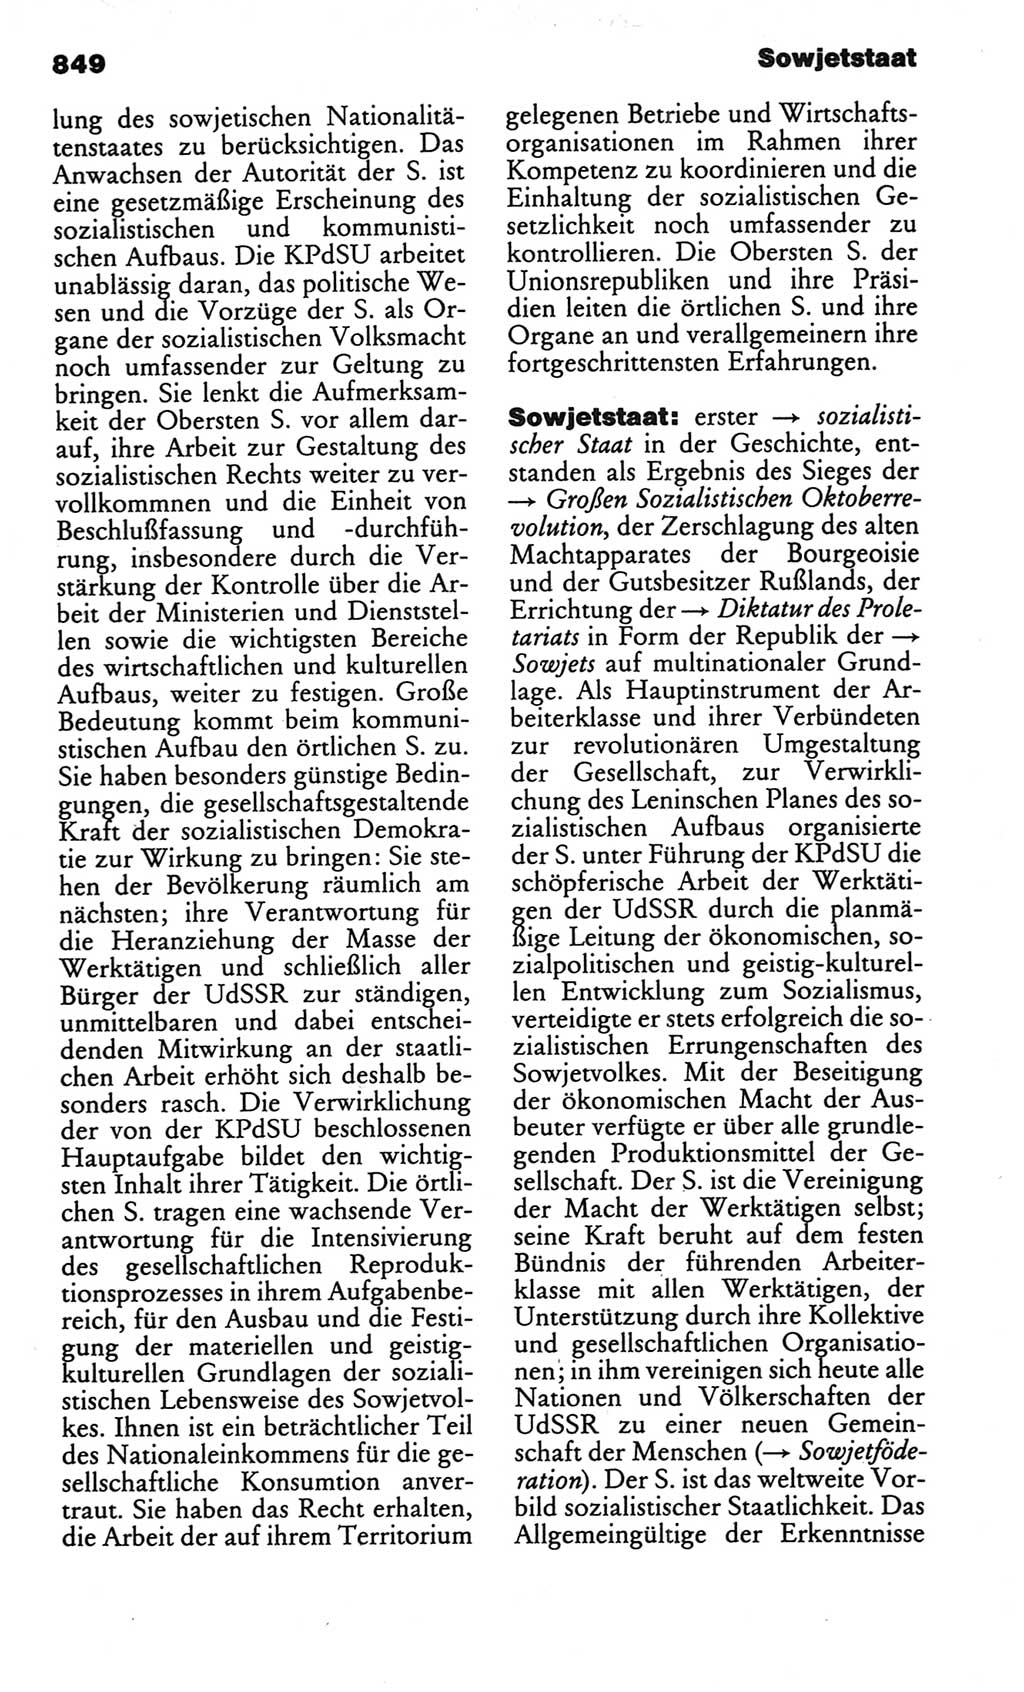 Kleines politisches Wörterbuch [Deutsche Demokratische Republik (DDR)] 1986, Seite 849 (Kl. pol. Wb. DDR 1986, S. 849)